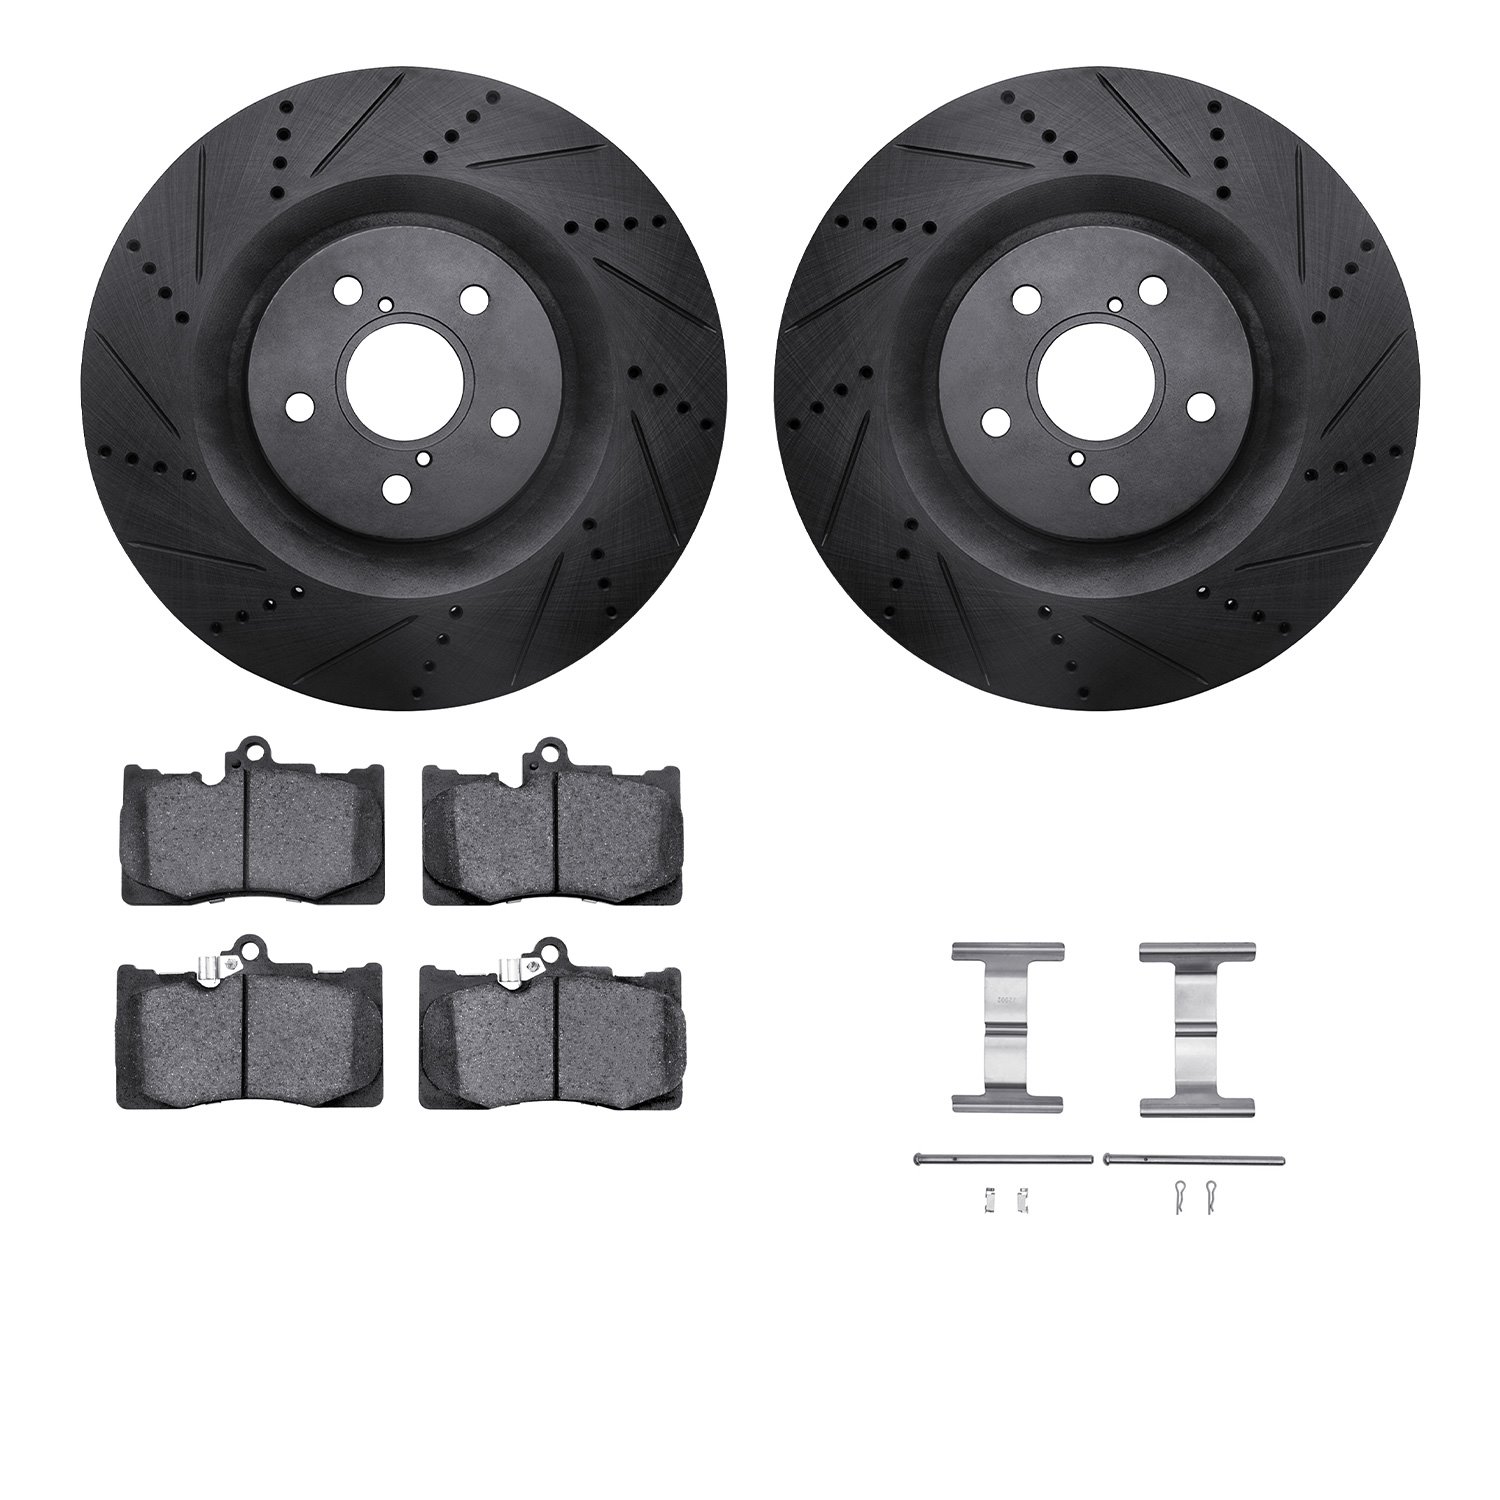 8312-75022 Drilled/Slotted Brake Rotors with 3000-Series Ceramic Brake Pads Kit & Hardware [Black], 2013-2020 Lexus/Toyota/Scion